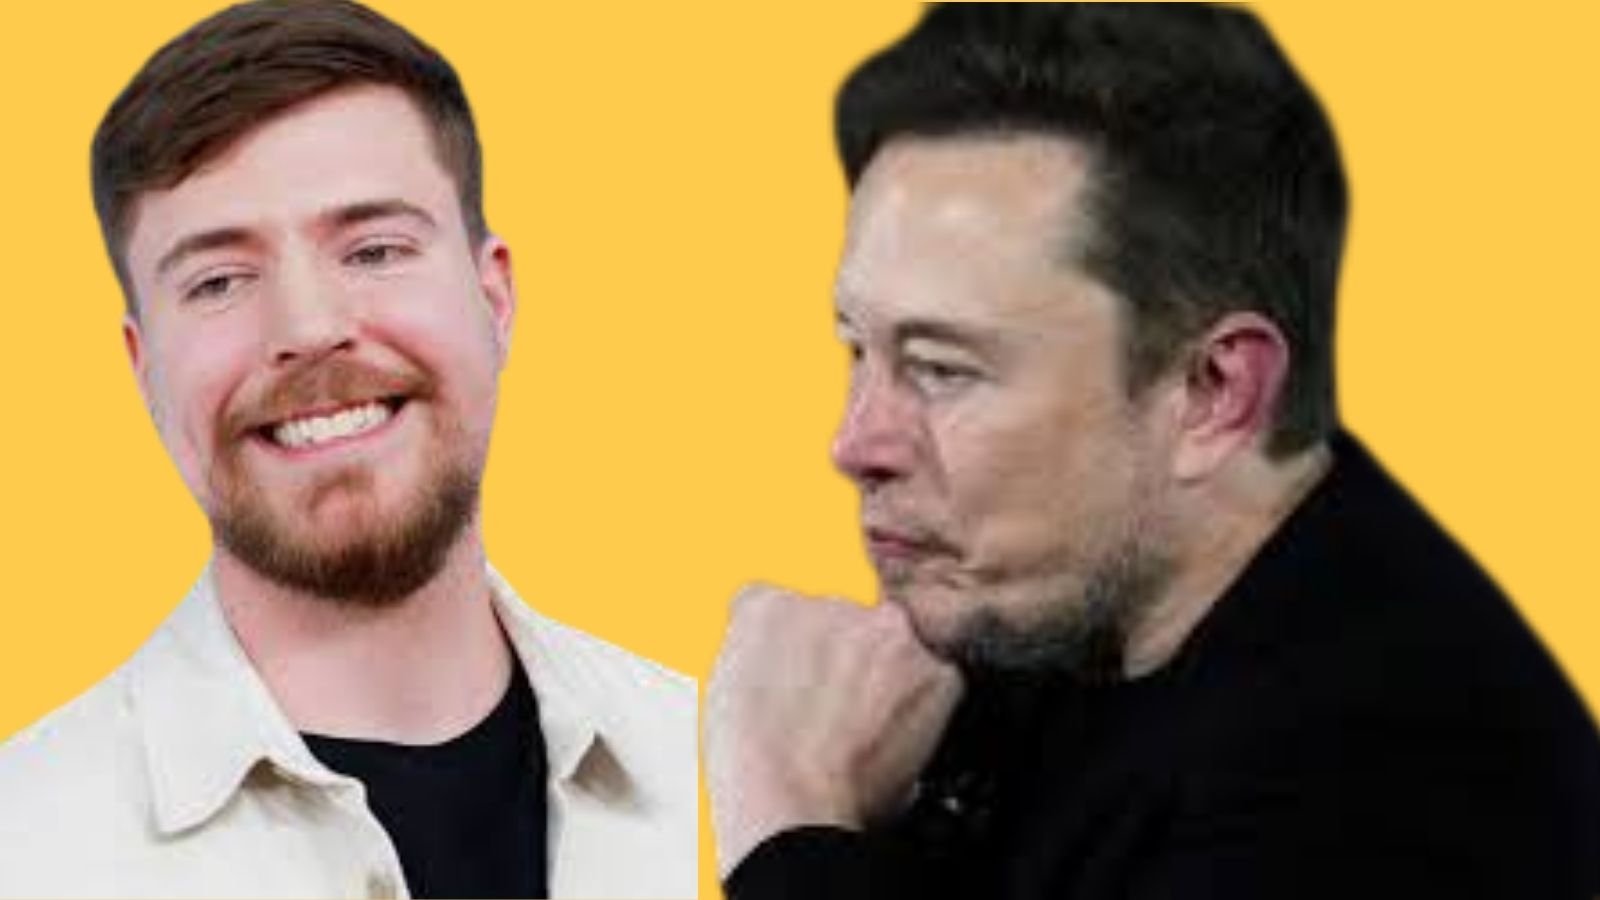 Ünlü Youtuber Mr.Beast’e X platformuna içerik üretmesi için teklif sunuldu. Teklifi sunan isim X’in sahibi Elon Musk’tı. Fakat Mr.Beast tarafından bu teklif reddedildi.

